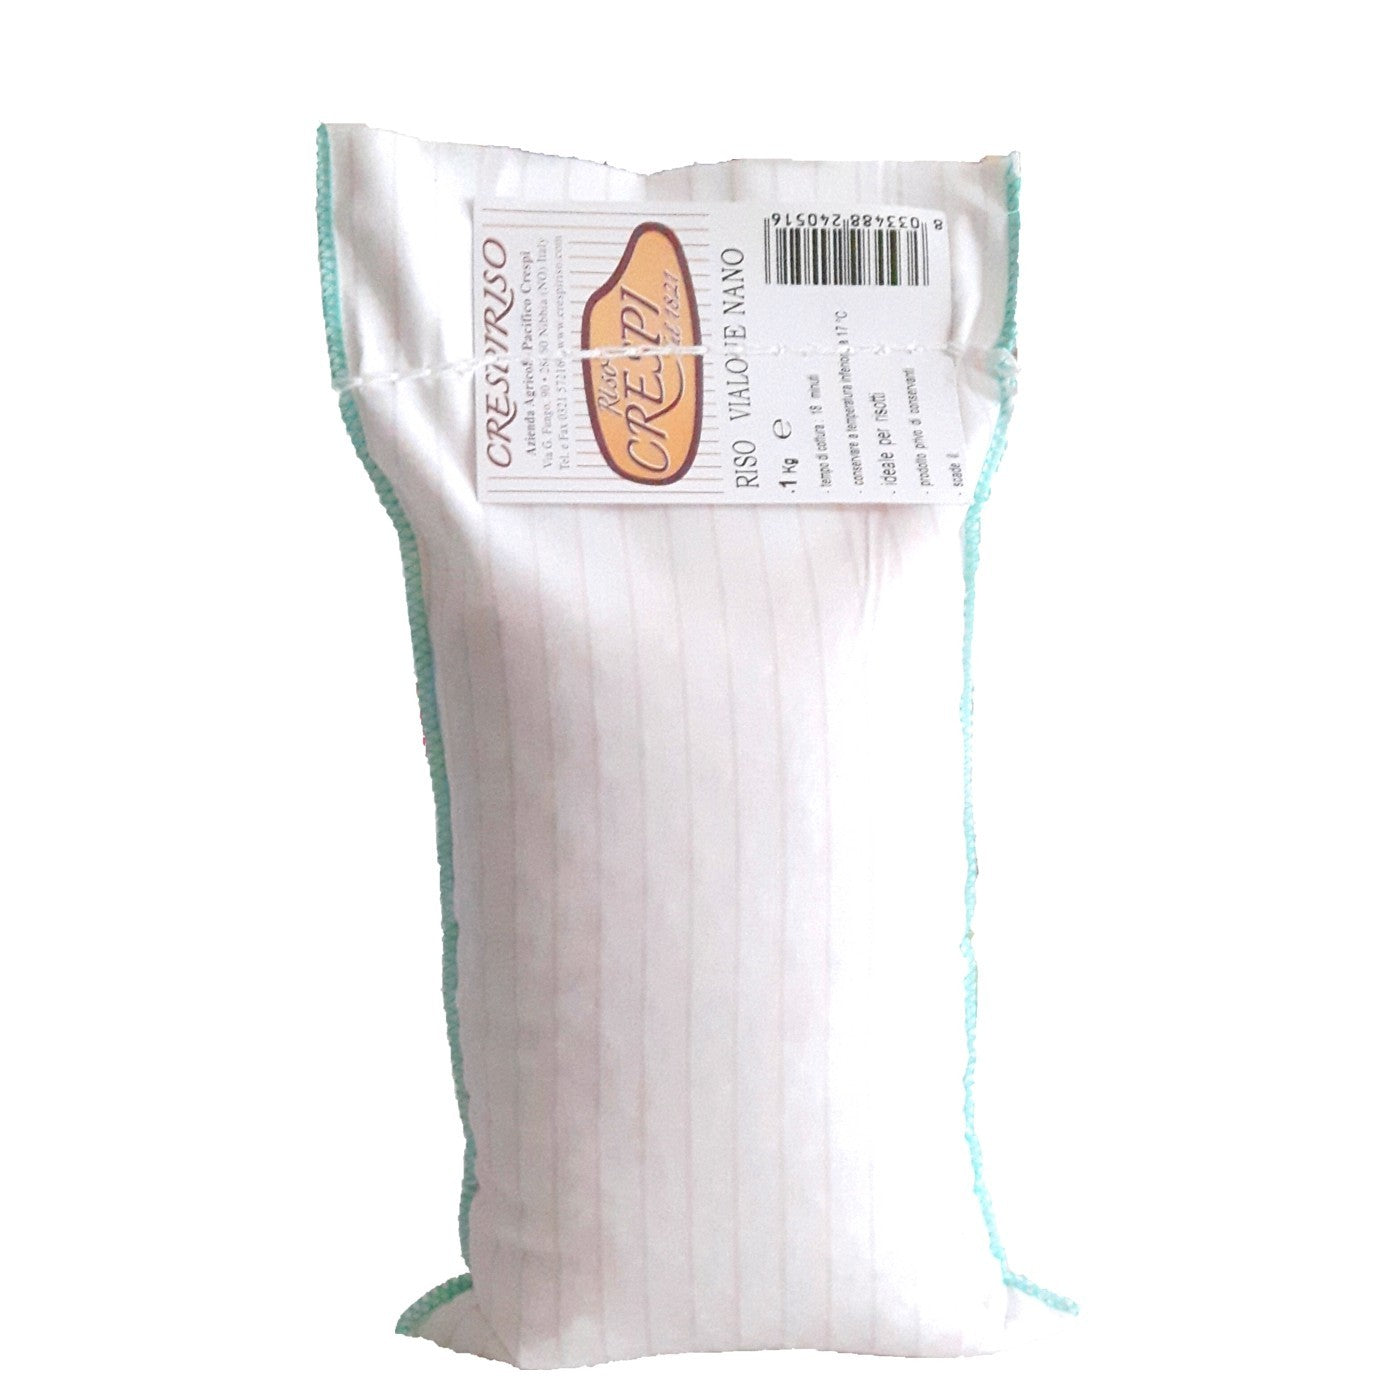 Riso Vialone Nano crespiriso 1kg confezione tradizionale in cotone naturale